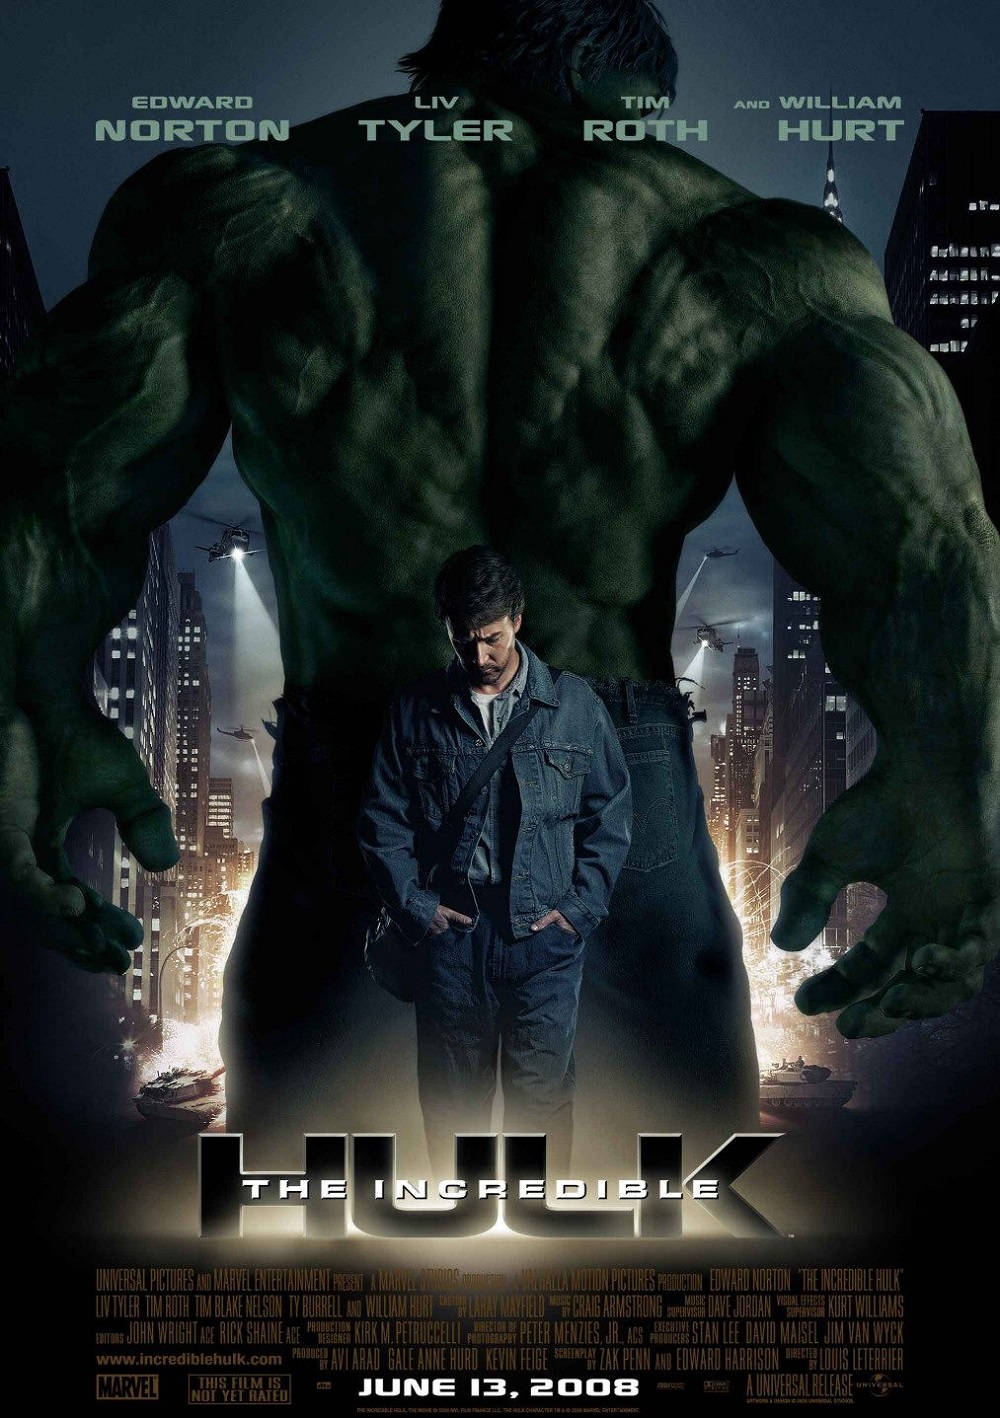 2. The Incredible Hulk / „Невероятният Хълк“ – Днес съществуването на филма „Невероятният Хълк“ често се пренебрегва от мнозина, тъй като изпълнителят на главната роля Едуард Нортън бе заменен от Марк Ръфало във филмите за Отмъстителите поради креативни различия. Самата лента е от по-слабите попълнения във вселената на Marvel със скромни приходи и не дотам висок процент на критическо одобрение.